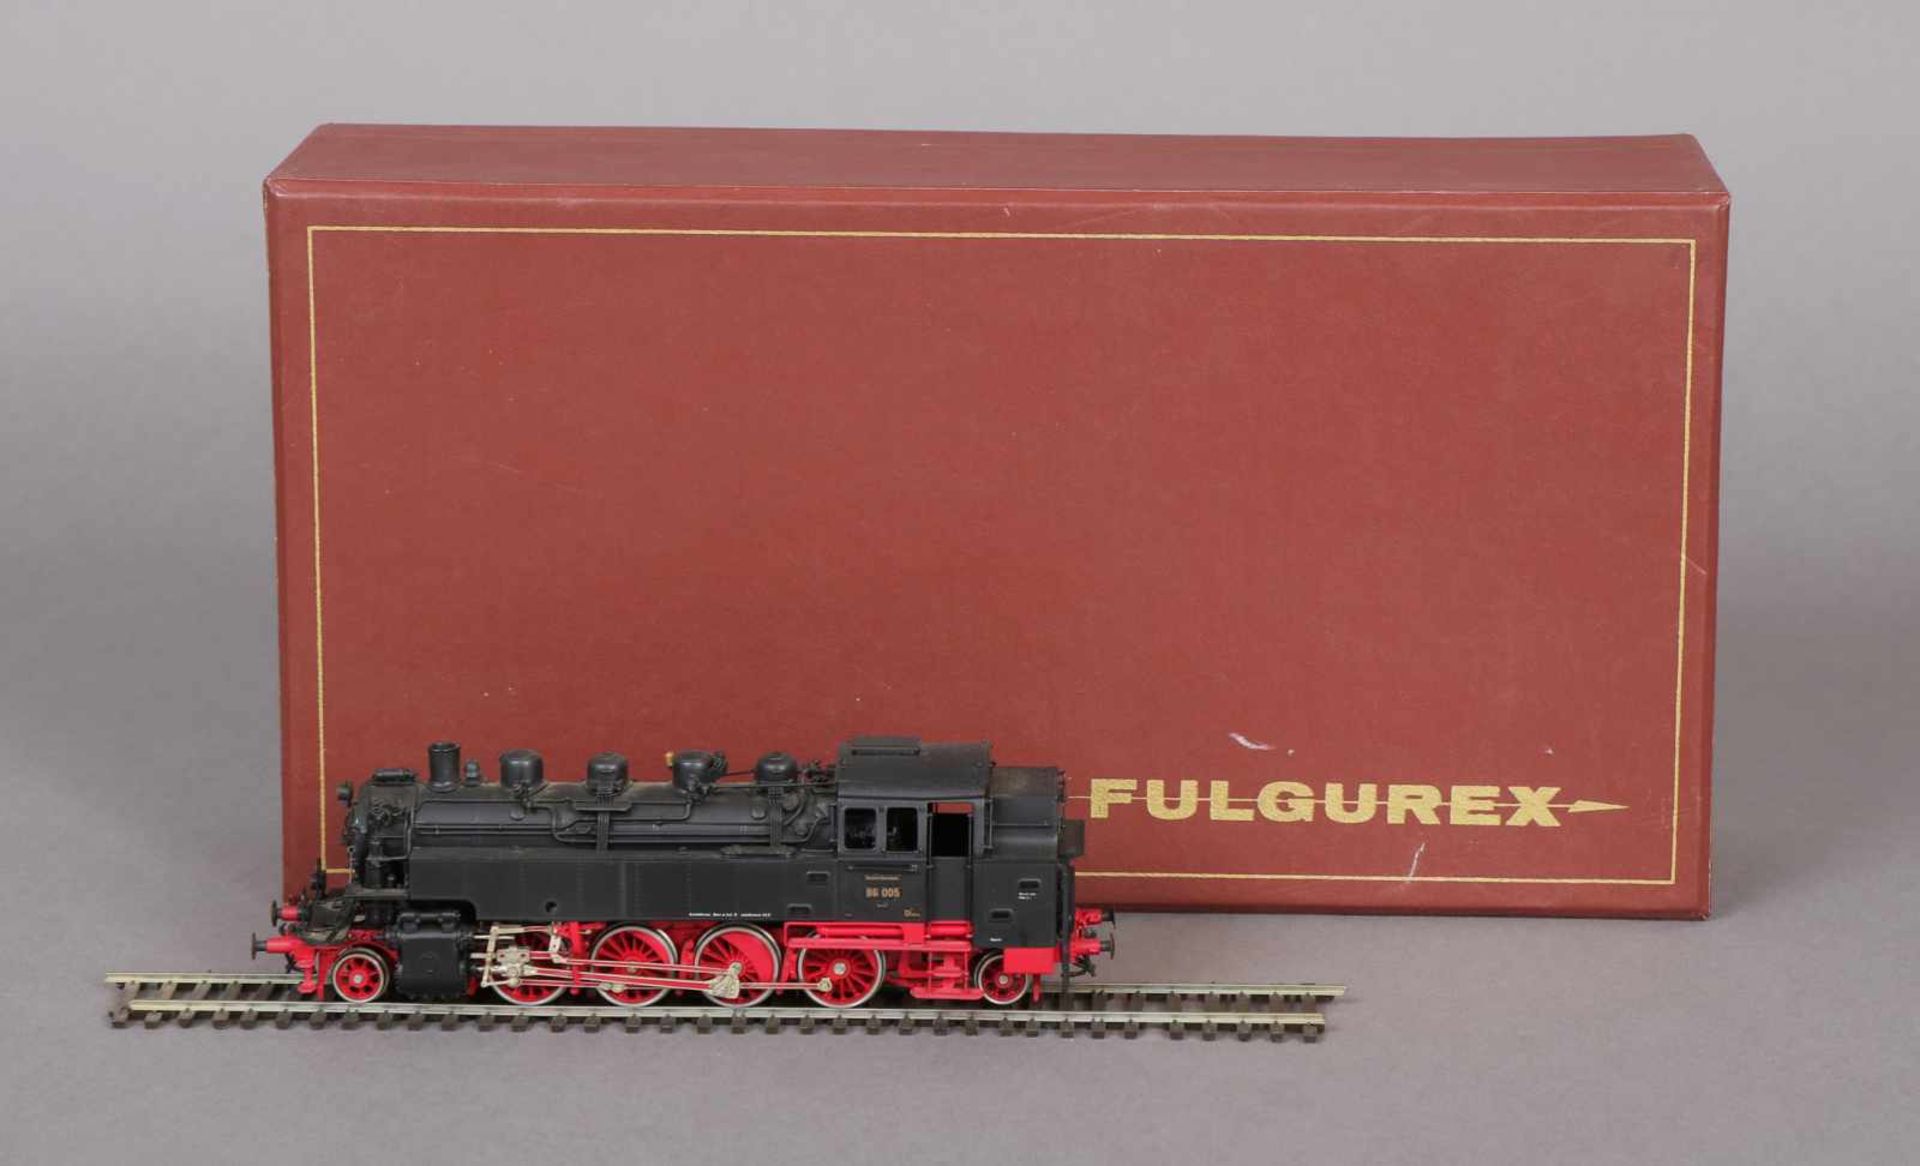 Fulgurex Modell-Lok Modell BR 86 005, Spur HO, Messing, Handarbeit, Ausführung schwarz-rot, in